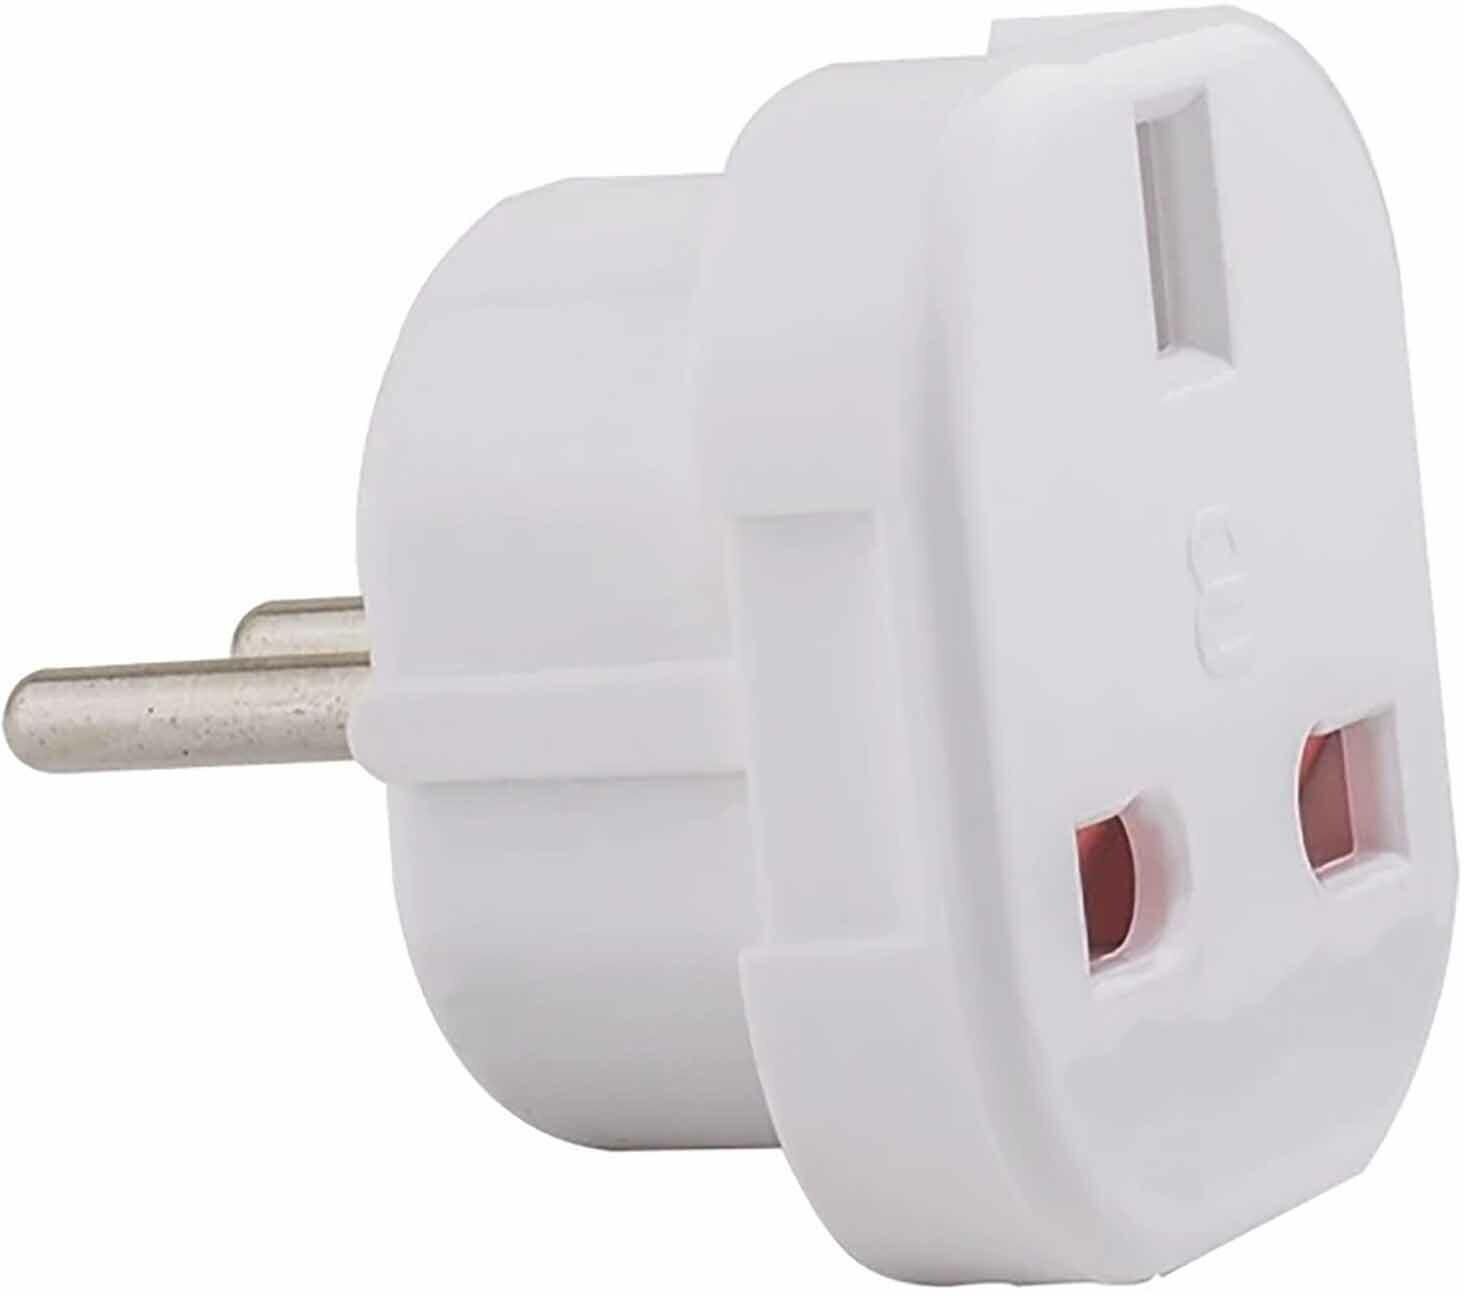 Elios Type F Plug to Type G Adapter - White